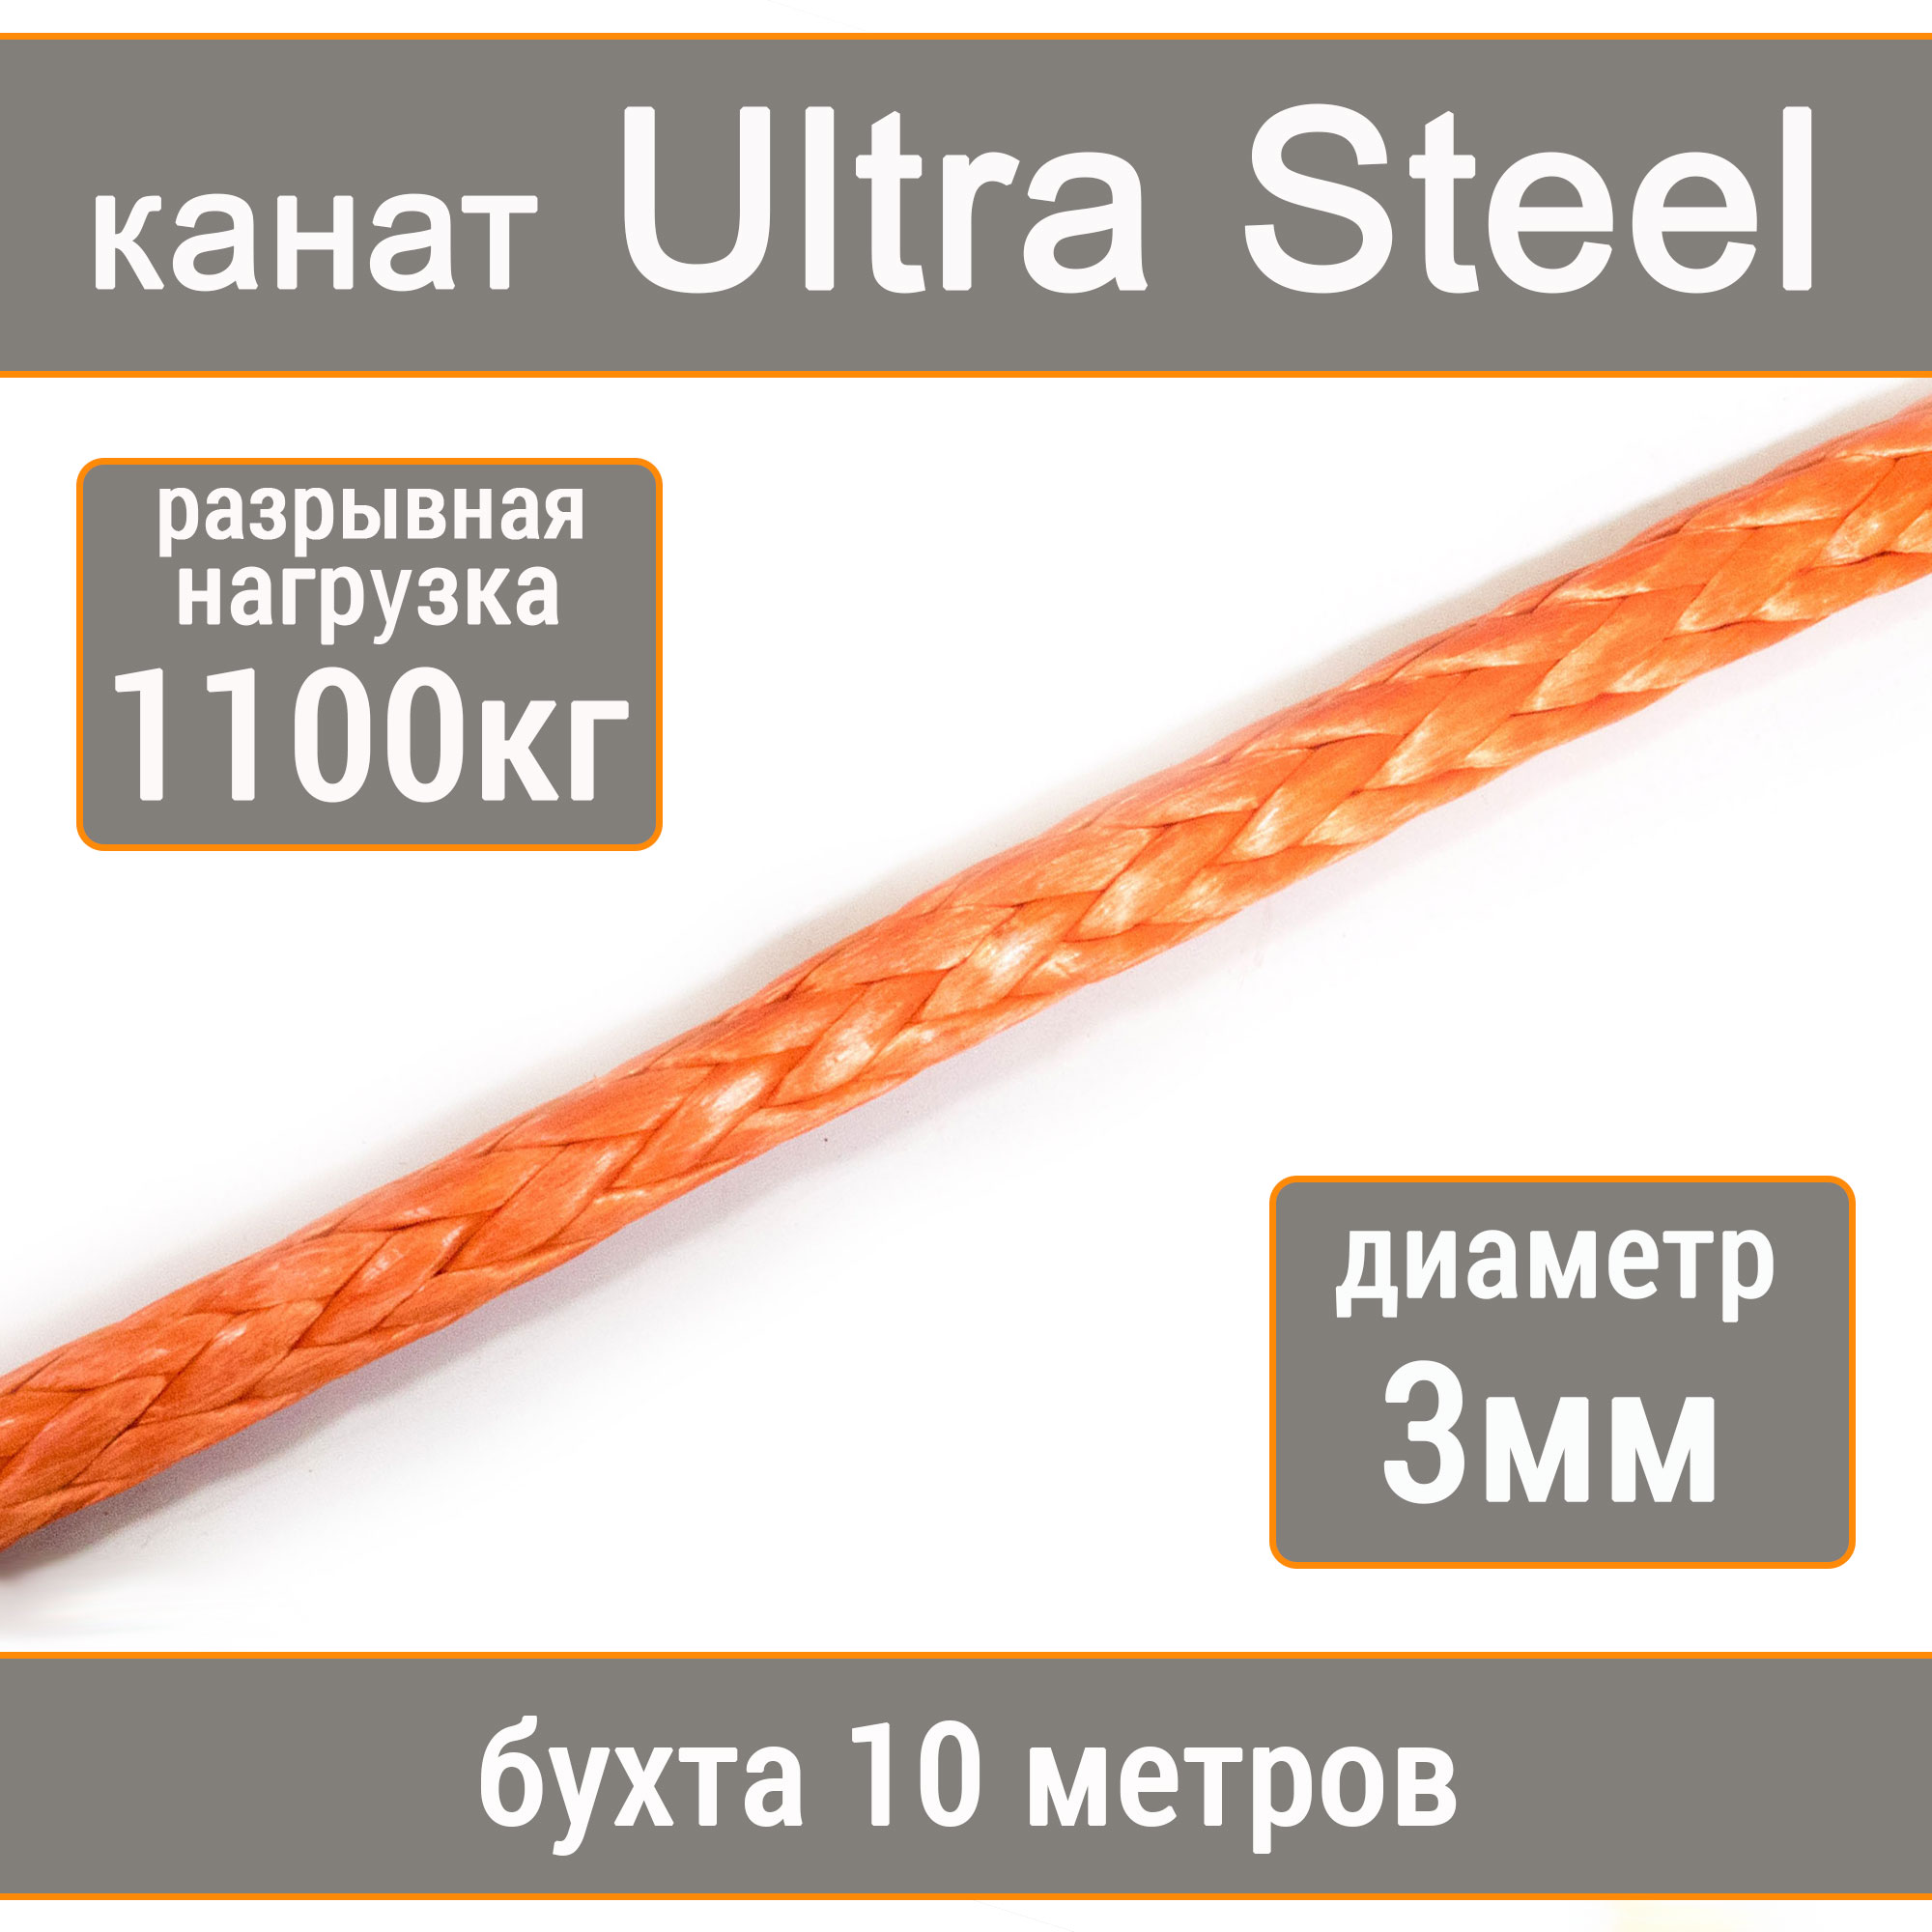 Высокопрочный синтетический канат UTX Ultra Steel 3мм р.н.1100кг, 007654321-103 пылесборник синтетический д пылесоса daewooтип du105 4 шт topperr dw50 1403